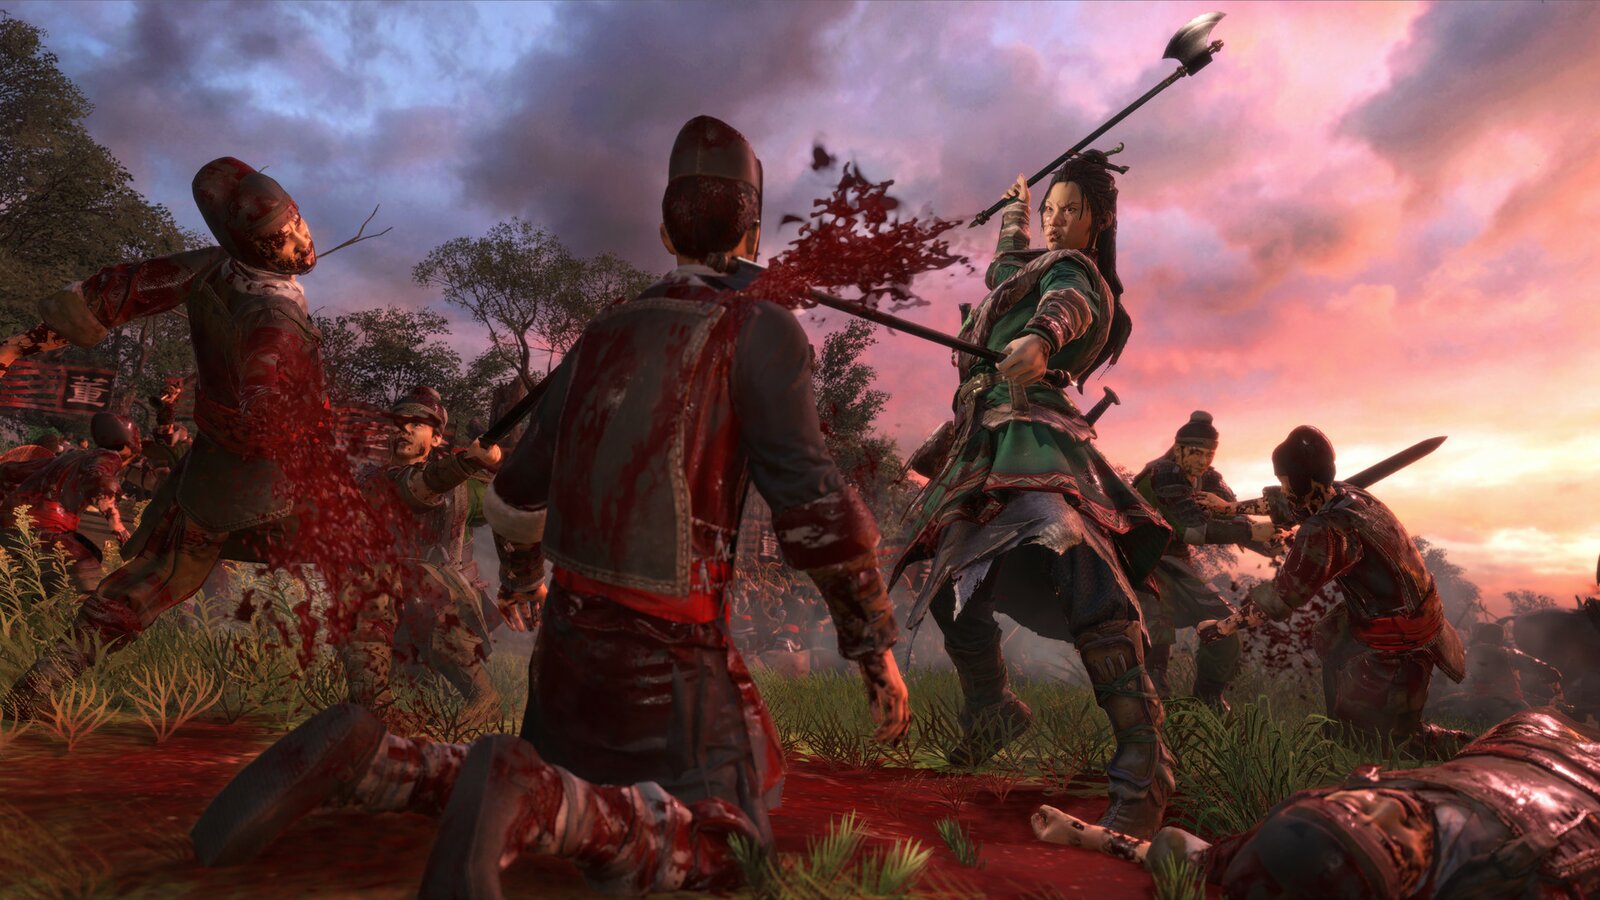 Total War: Three Kingdoms - Reign of Blood